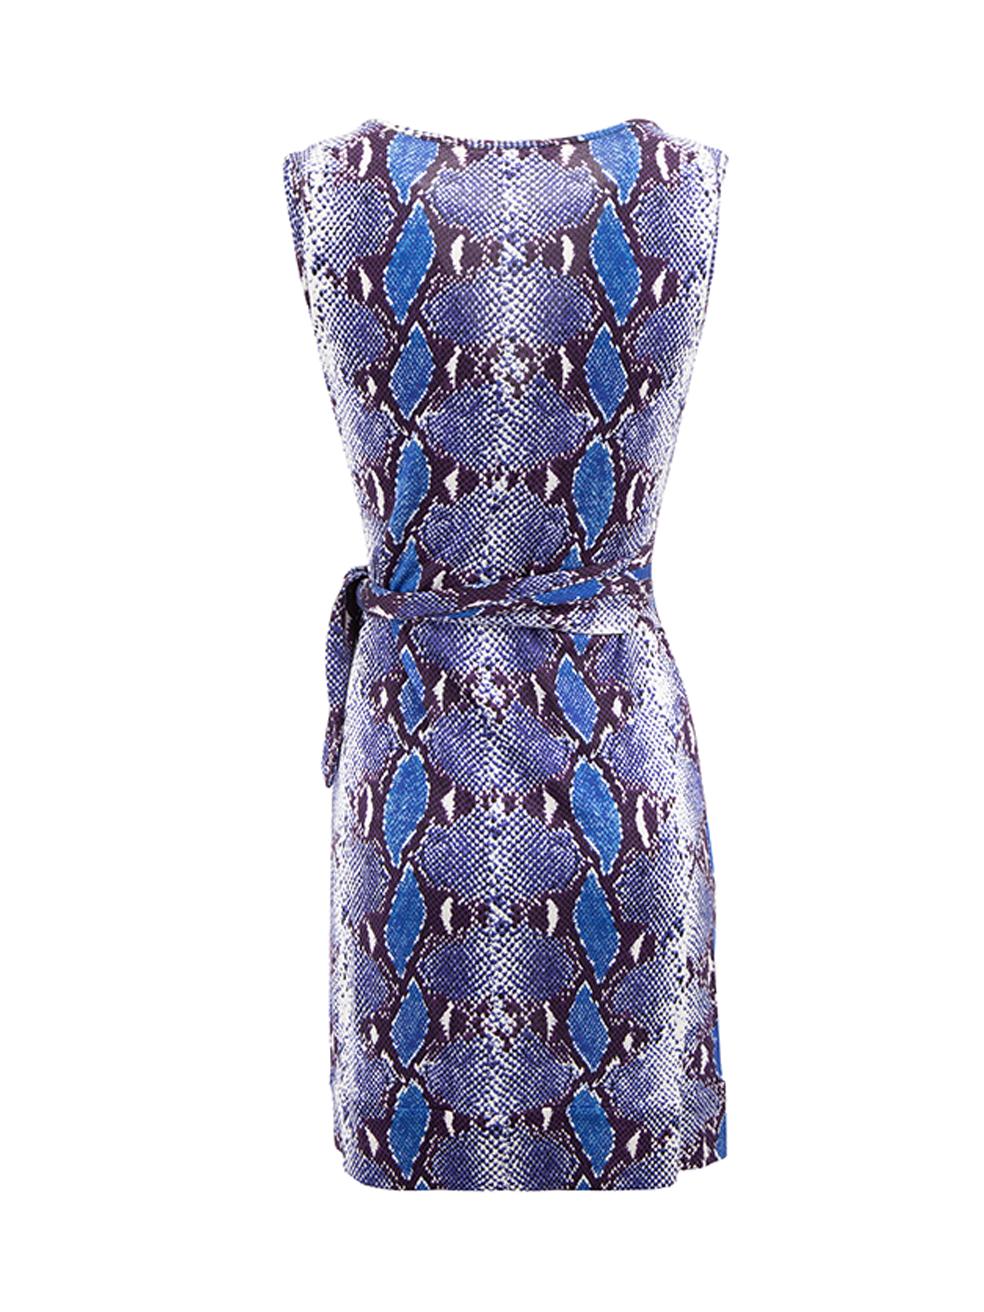 Diane Von Furstenberg Women's Blue Snakeskin Pattern Mini Dress In Good Condition For Sale In London, GB